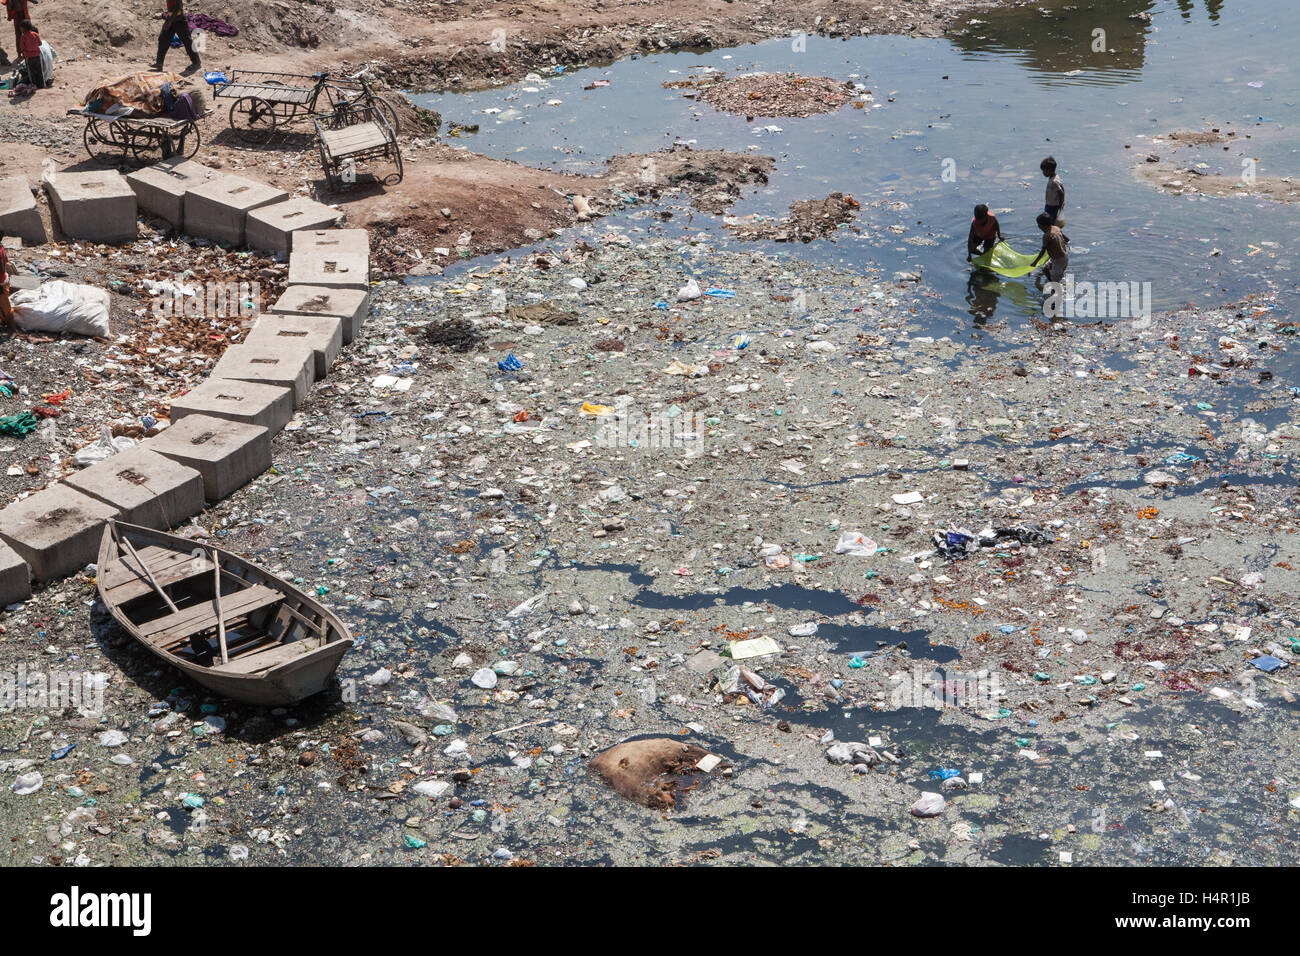 Kinder spielen in dreckigen und verschmutzten Fluss Sabarmati in das Zentrum von Ahmedabad, Gujarat Zustand, Indien, Asien. Stockfoto